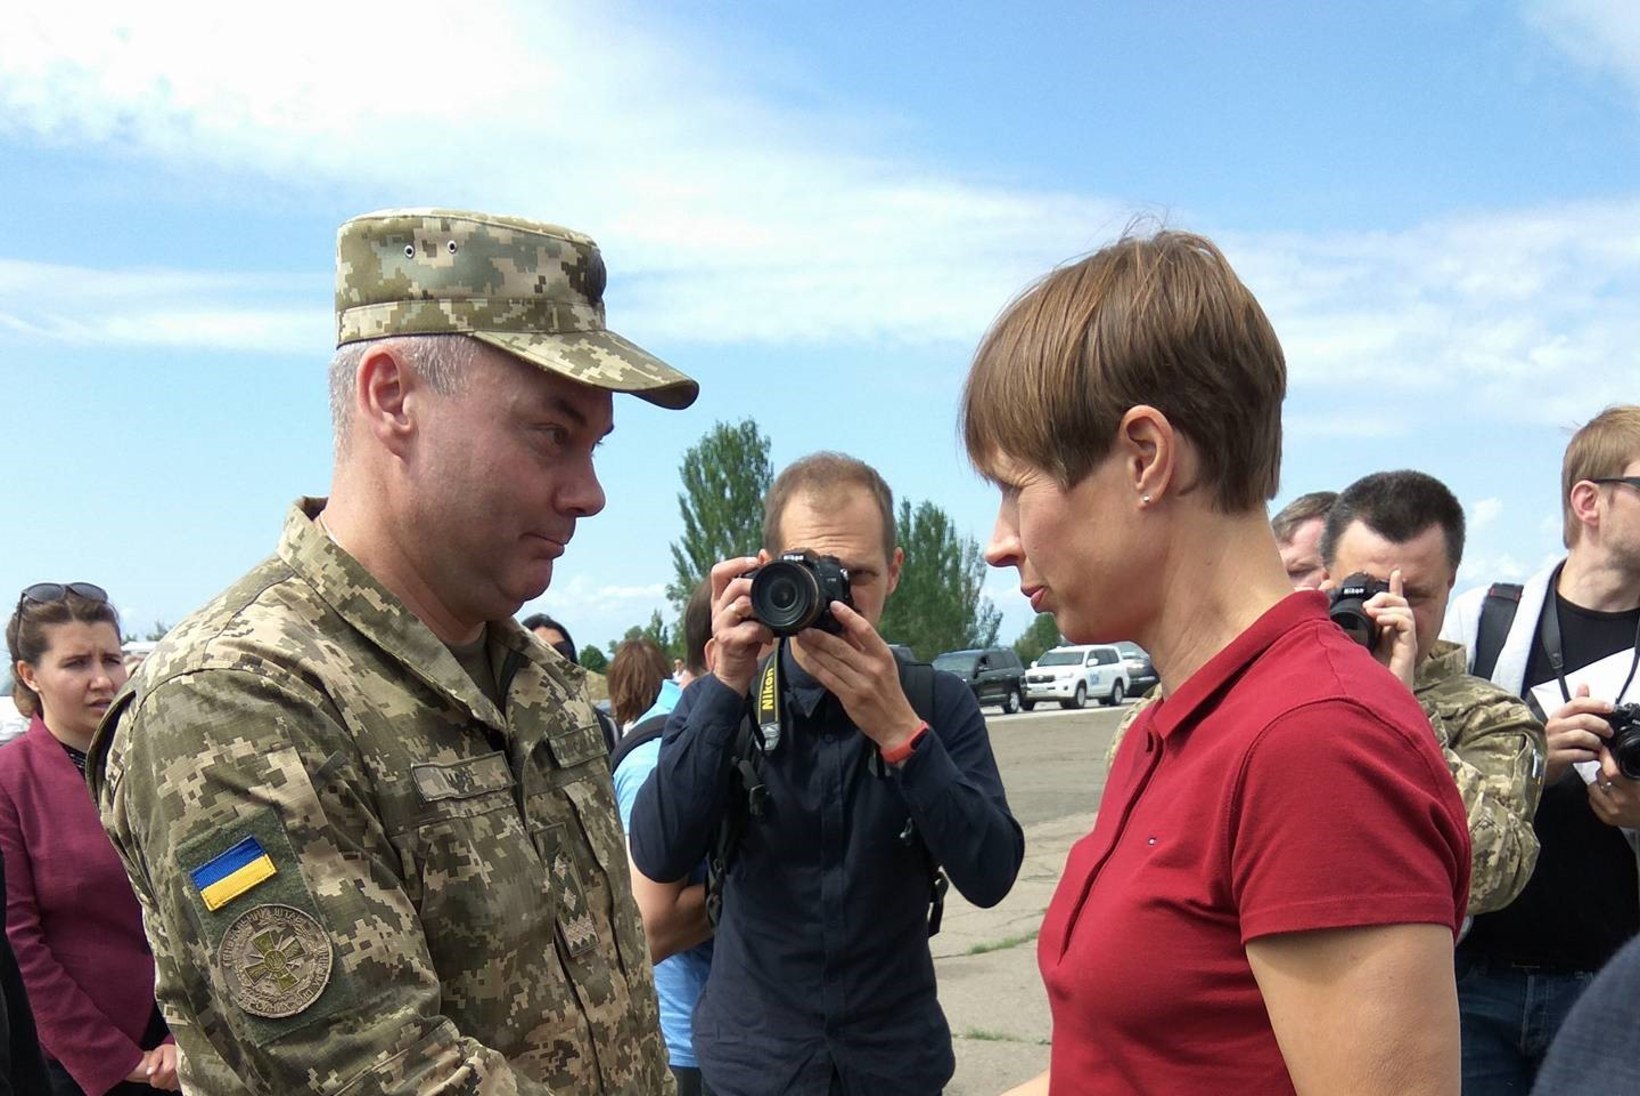 FOTOD UKRAINAST | Kaljulaid sõitis esimese riigipeana Donbassi sõjapiirkonda